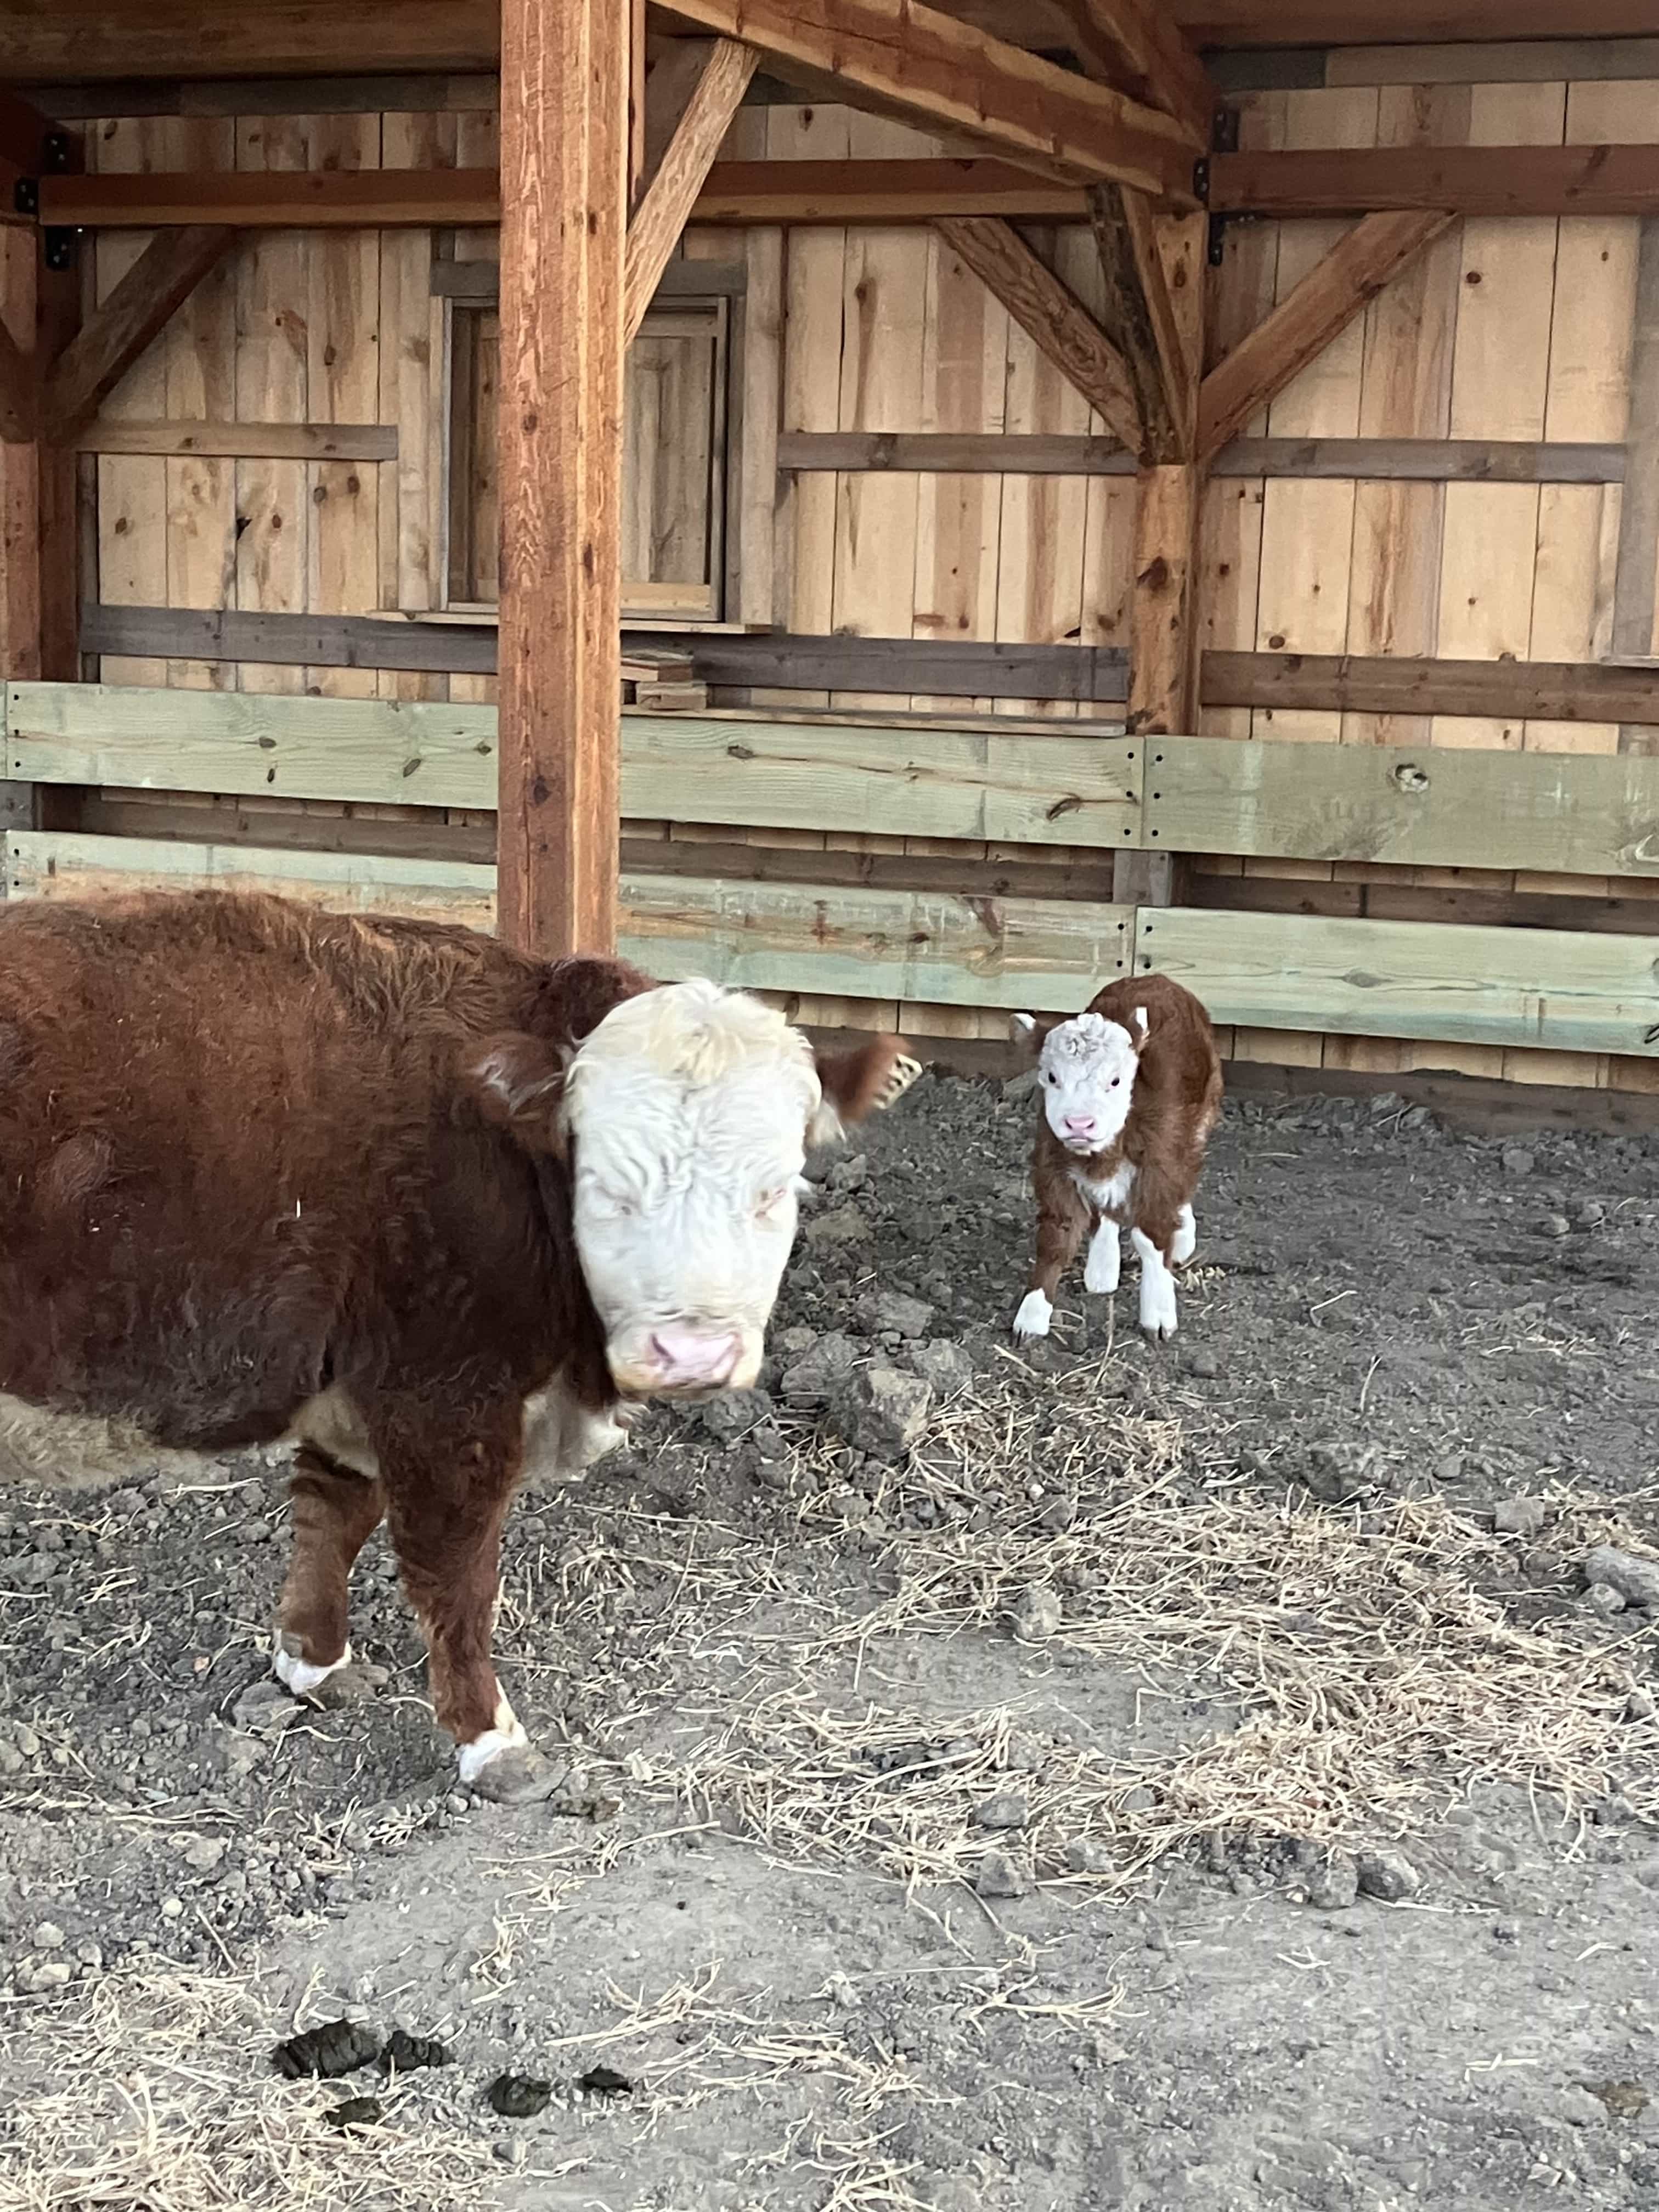 New cow nursery barn with cow calf pair